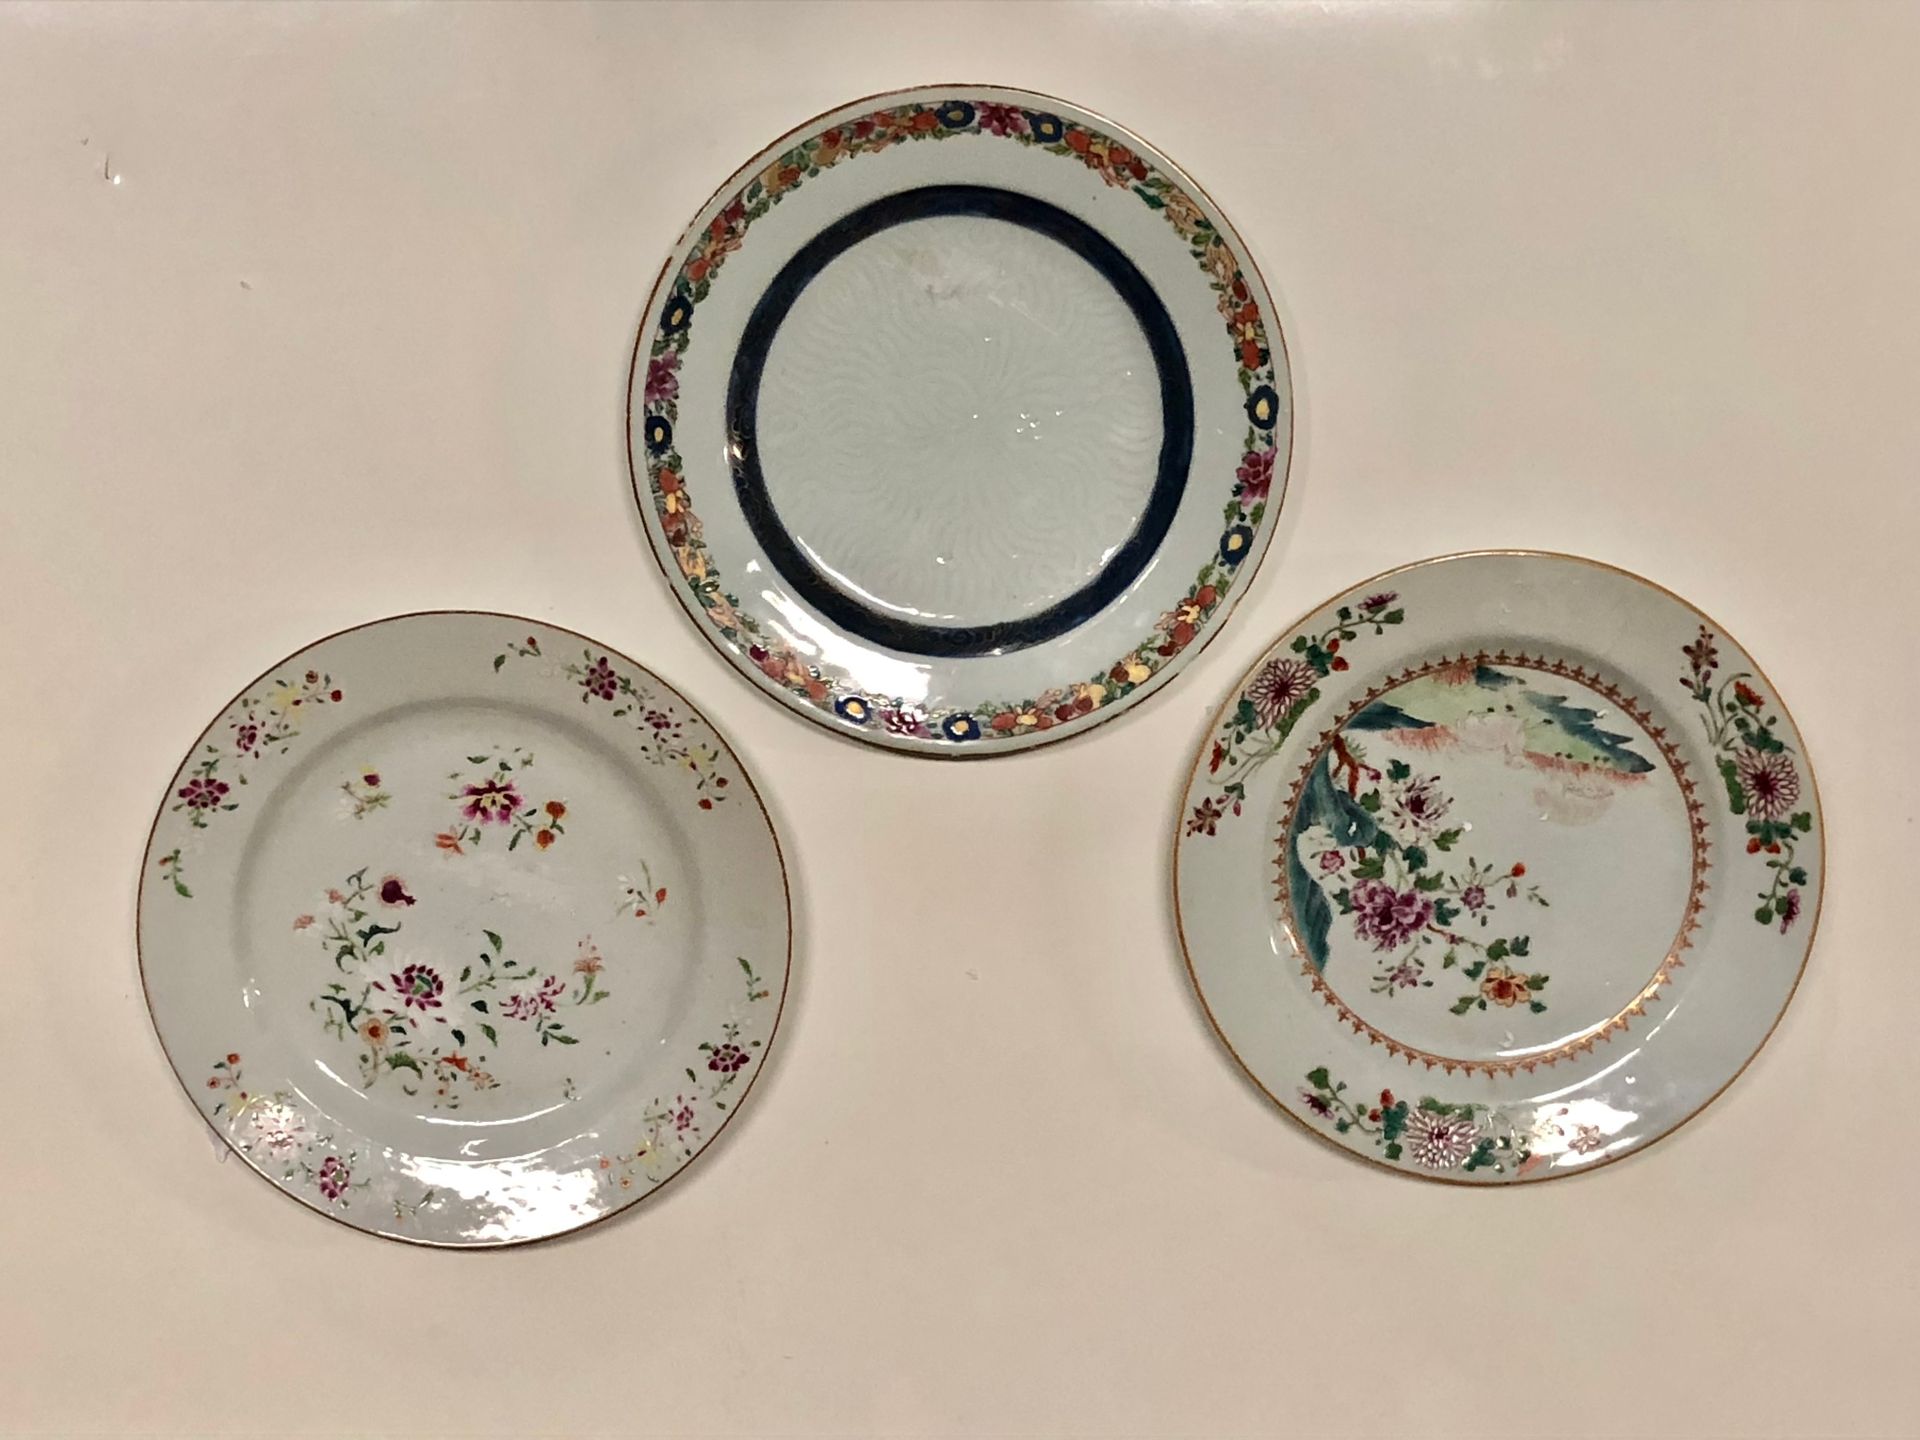 Null 中国 - 三个圆形瓷盘，有各种粉彩装饰。一幅是鲜花，另一幅是鲜花和水果，第三幅是风景中的山羊。


钱龙时期(1736-1795)


头发和薯片

&hellip;